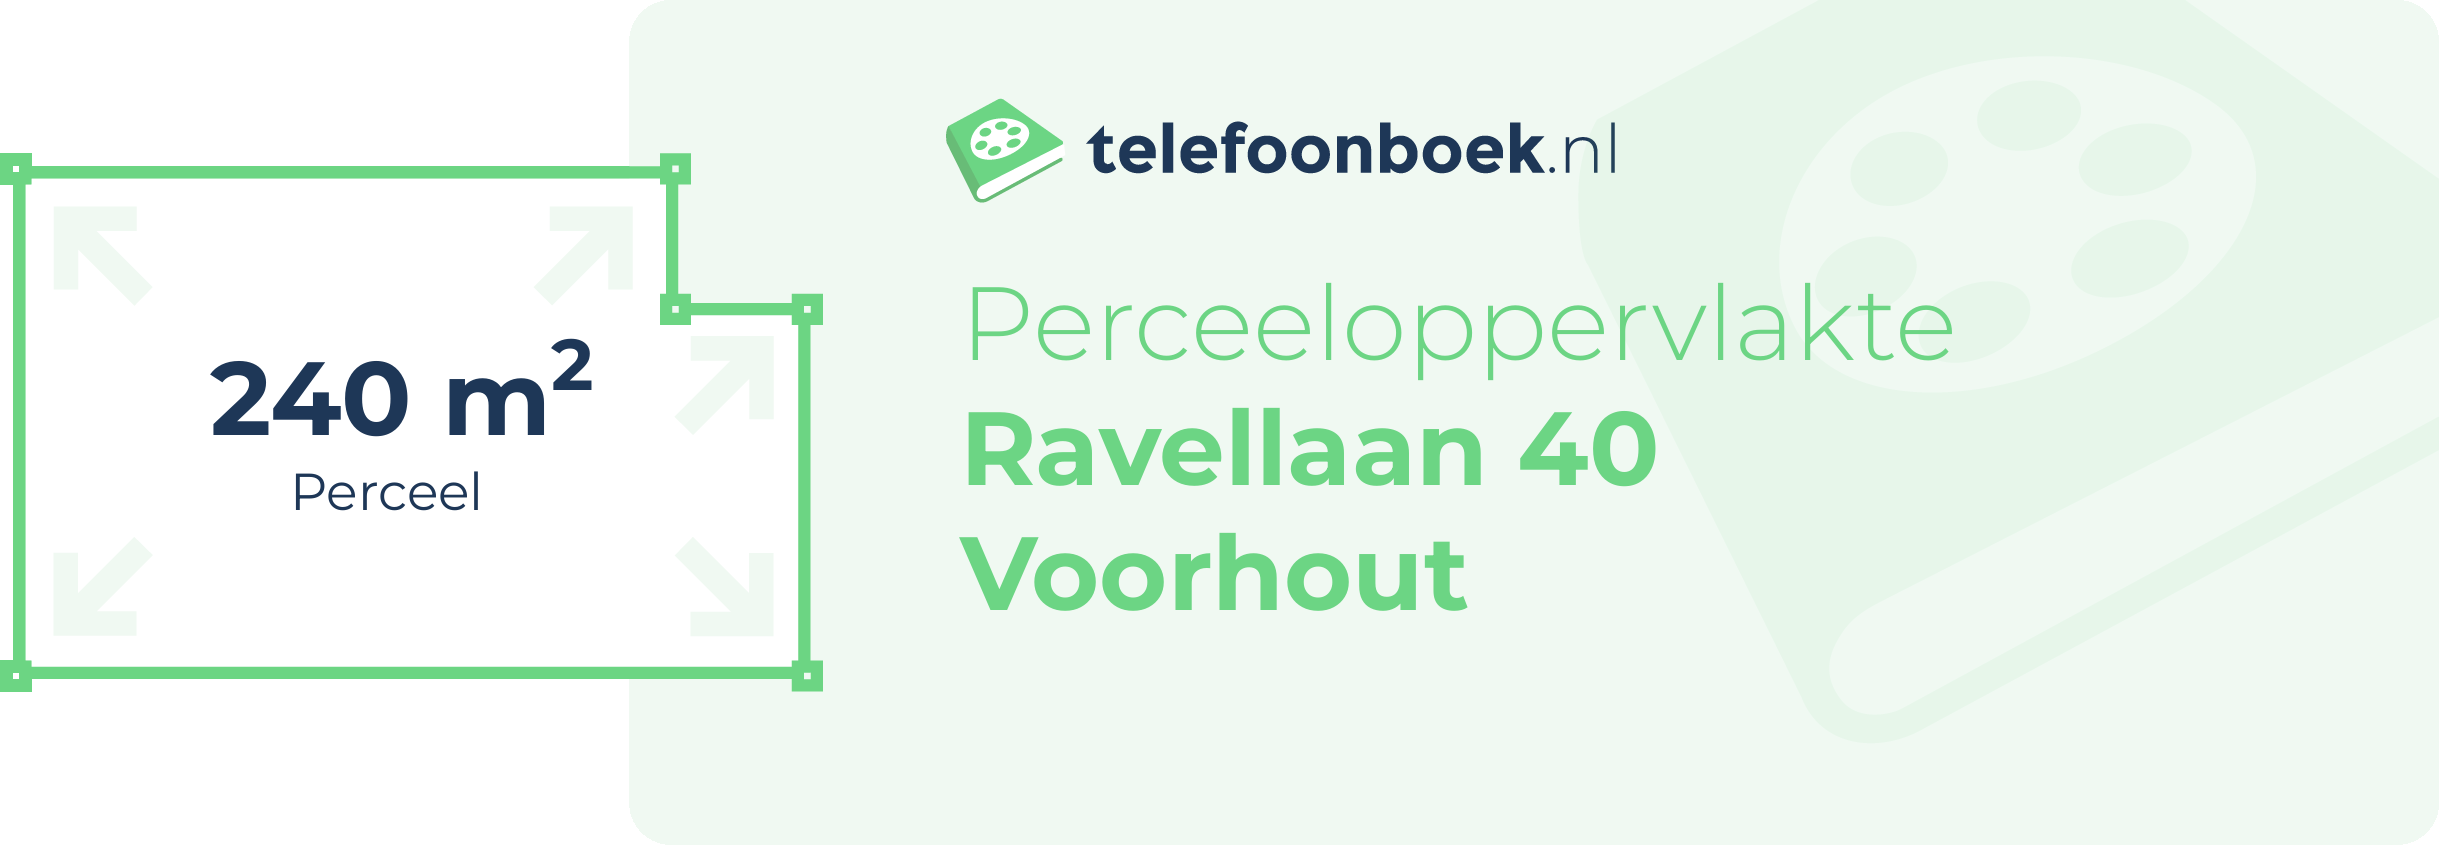 Perceeloppervlakte Ravellaan 40 Voorhout